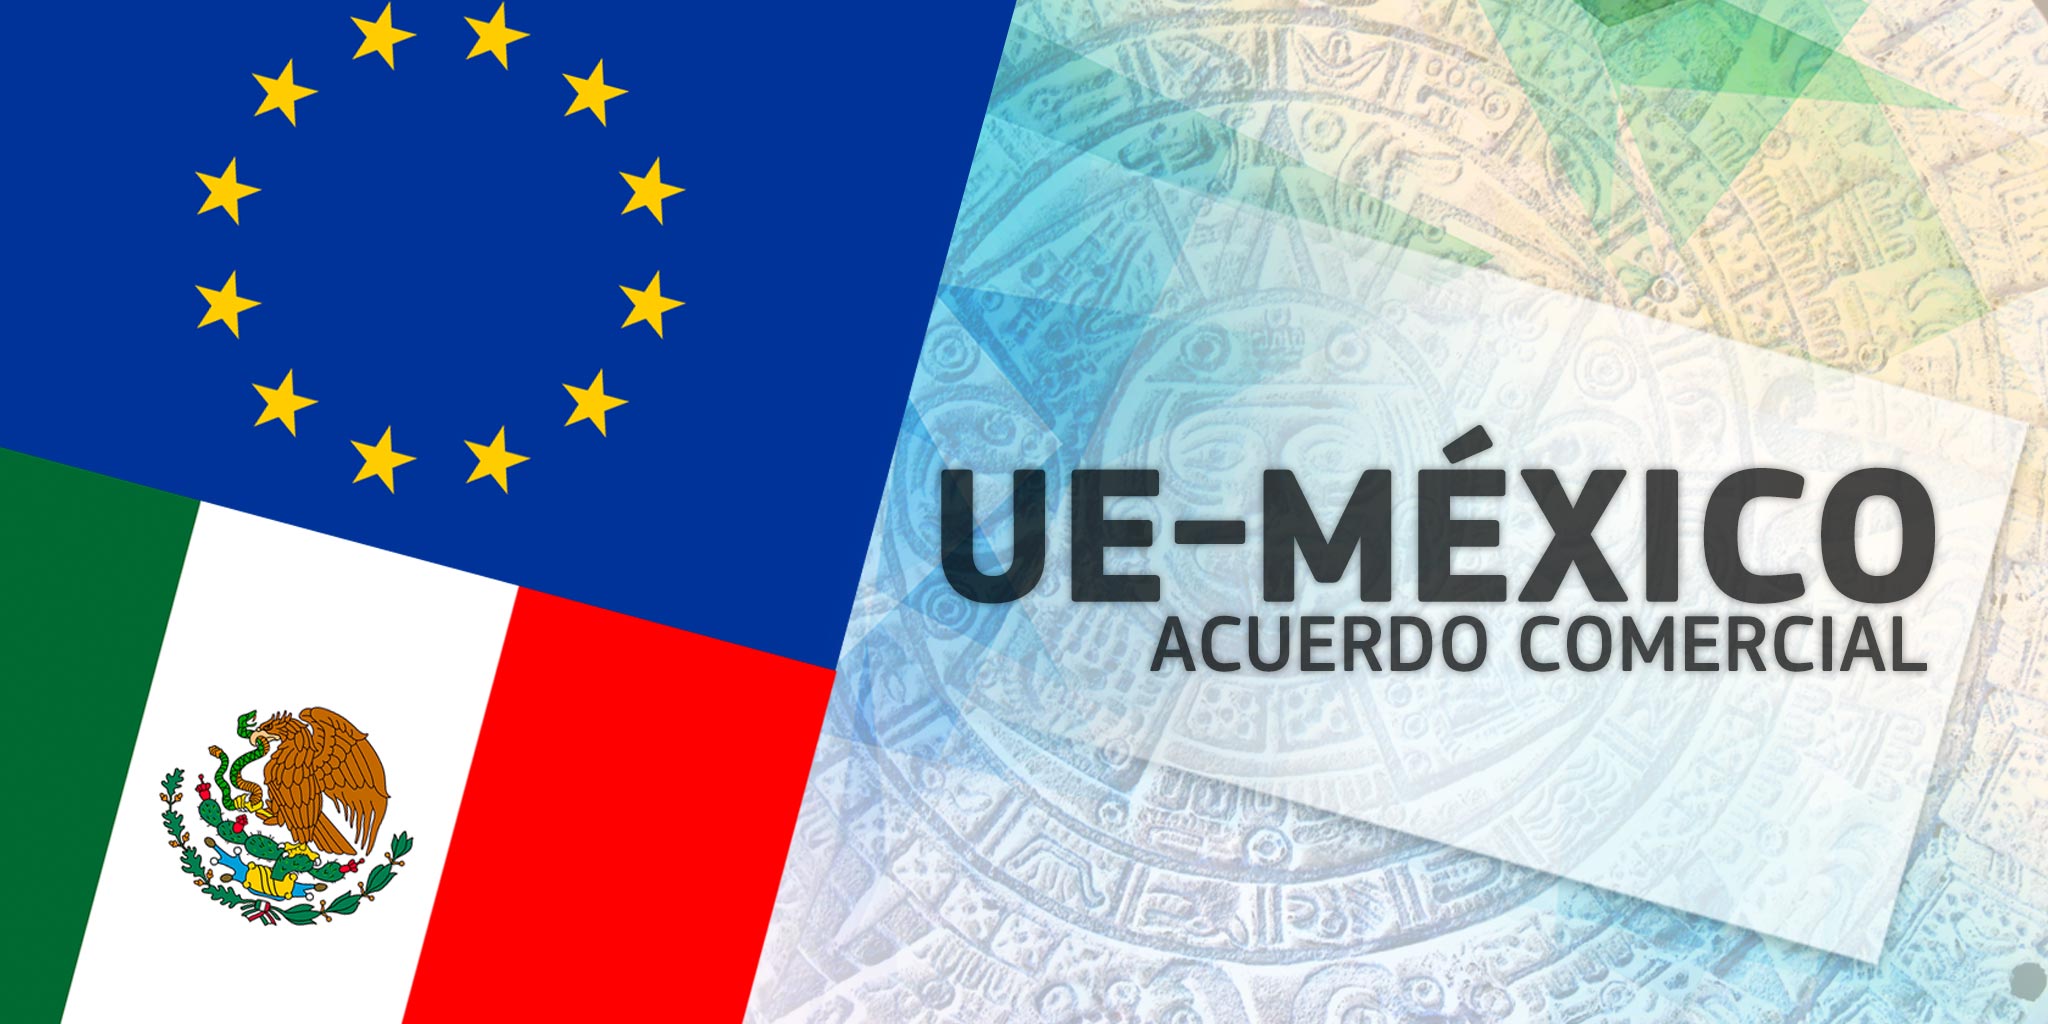 Acuerdo comercial UE-México: Un paso más hacia el comercio opaco y no democrático